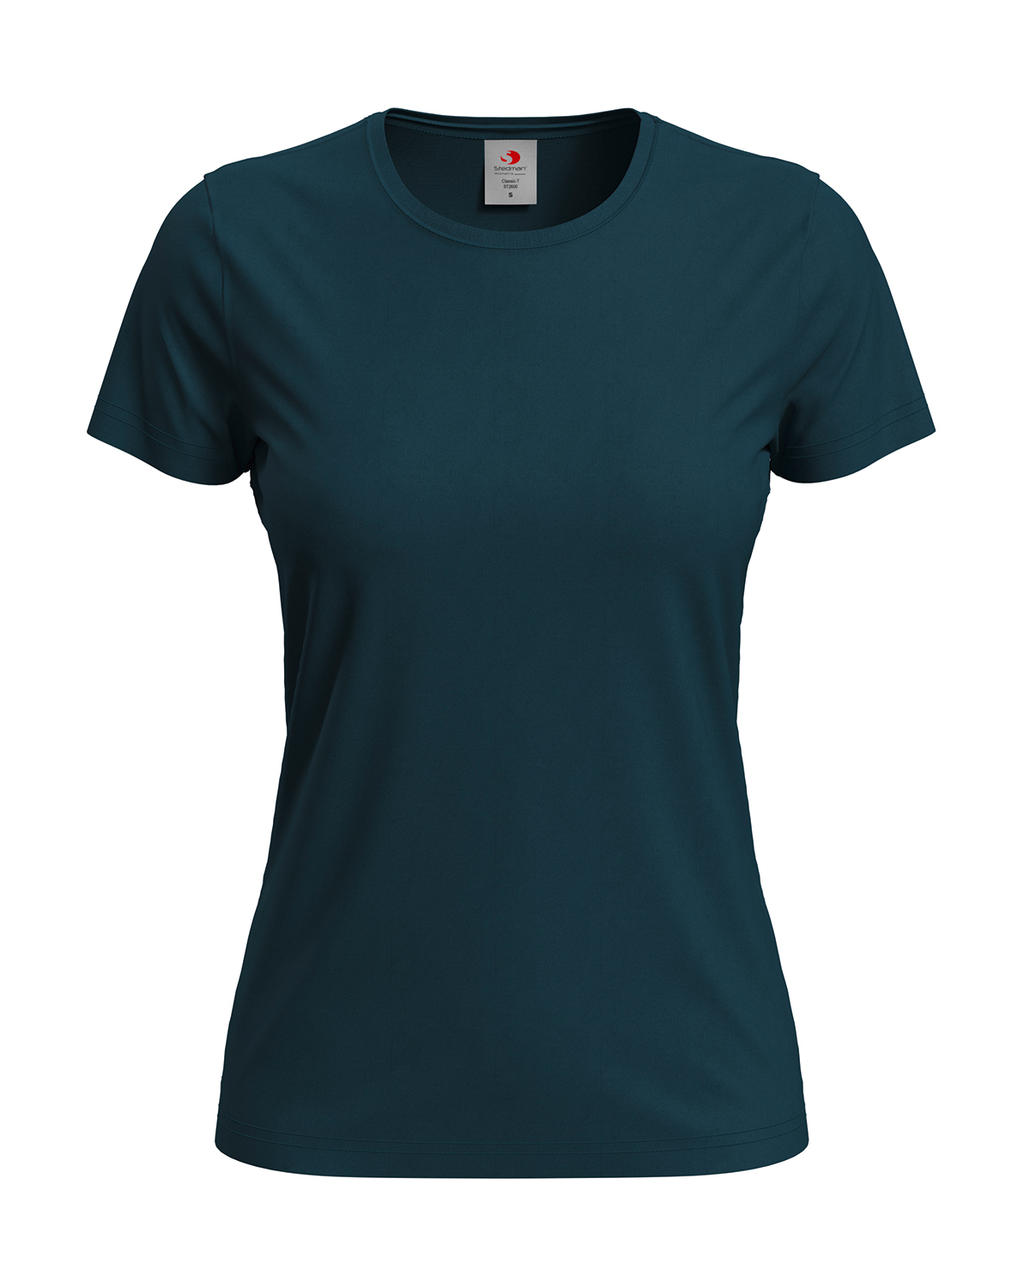 Tričko dámské Stedman Fitted s kulatým výstřihem - tmavě modré, XL